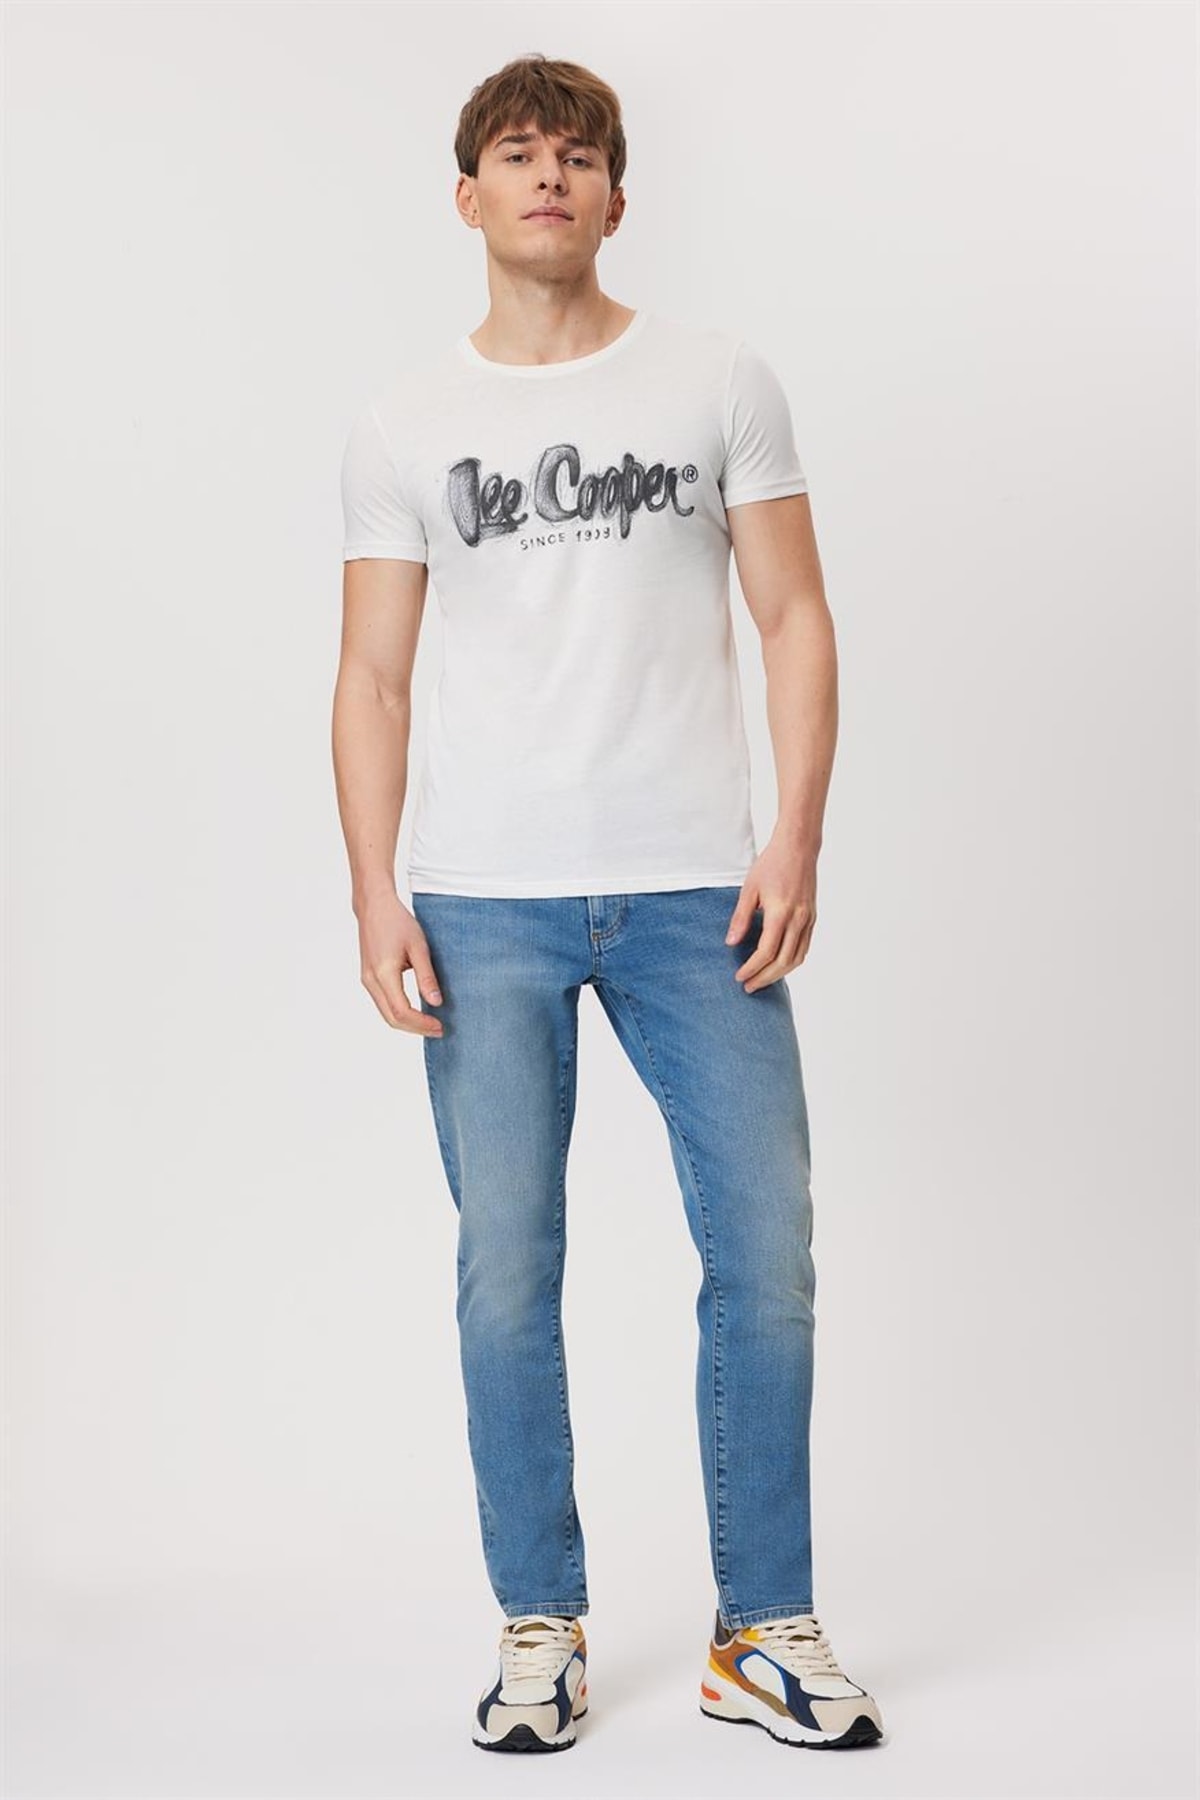 Lee Cooper Men's T-shirt White